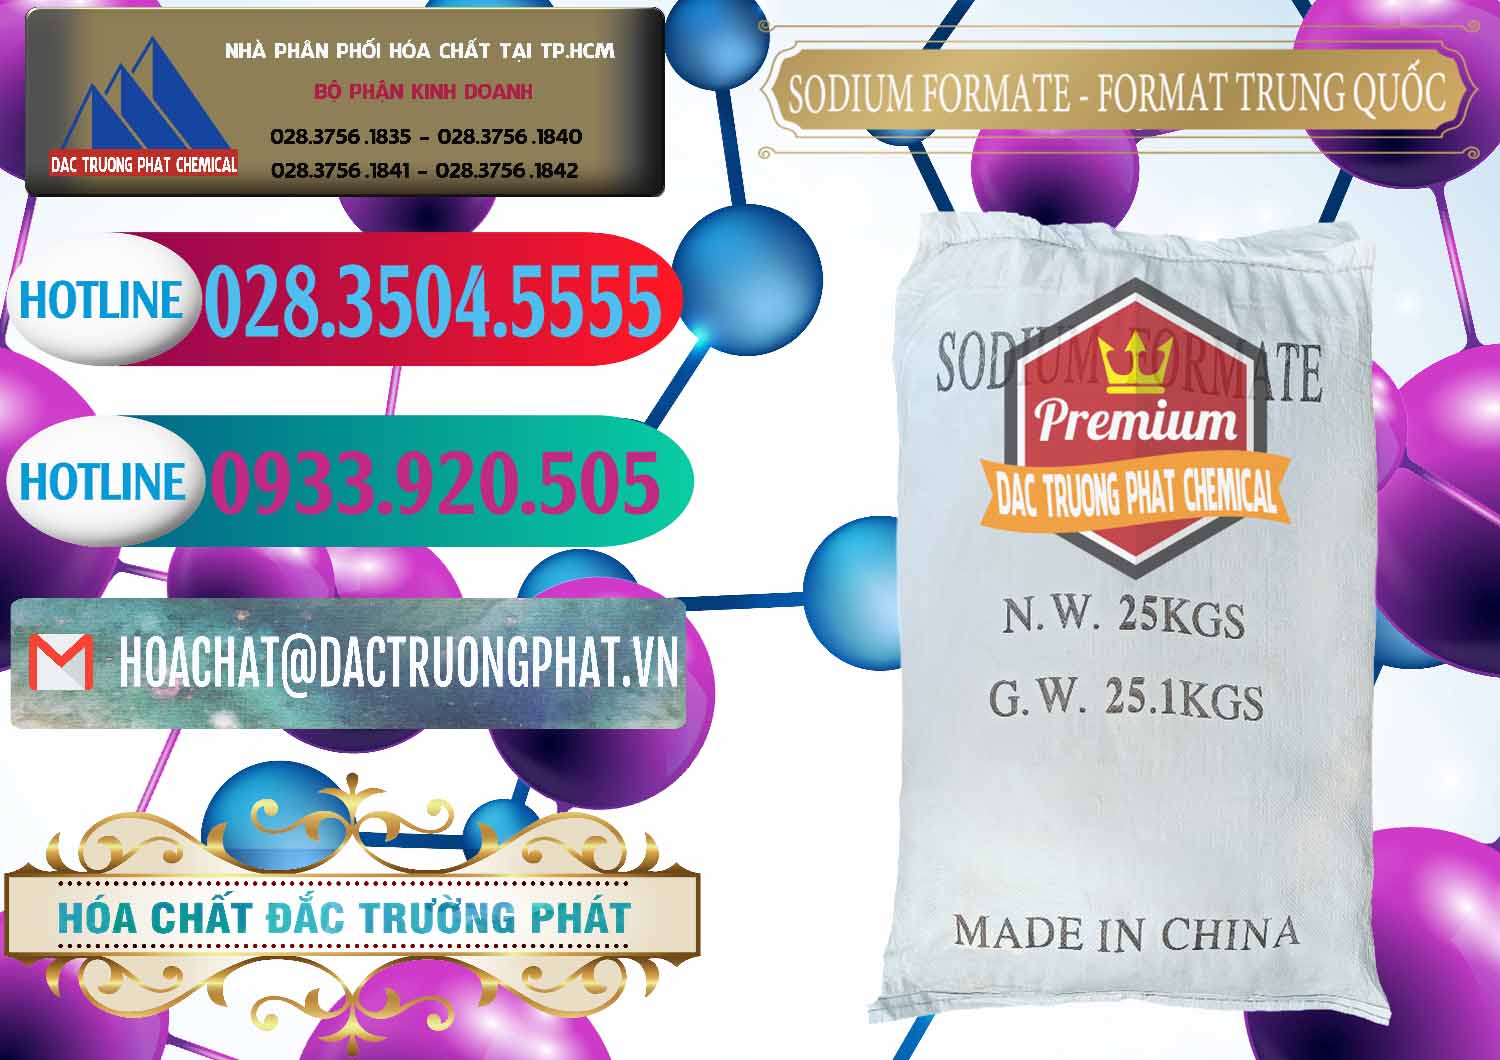 Kinh doanh ( bán ) Sodium Formate - Natri Format Trung Quốc China - 0142 - Chuyên bán và phân phối hóa chất tại TP.HCM - truongphat.vn